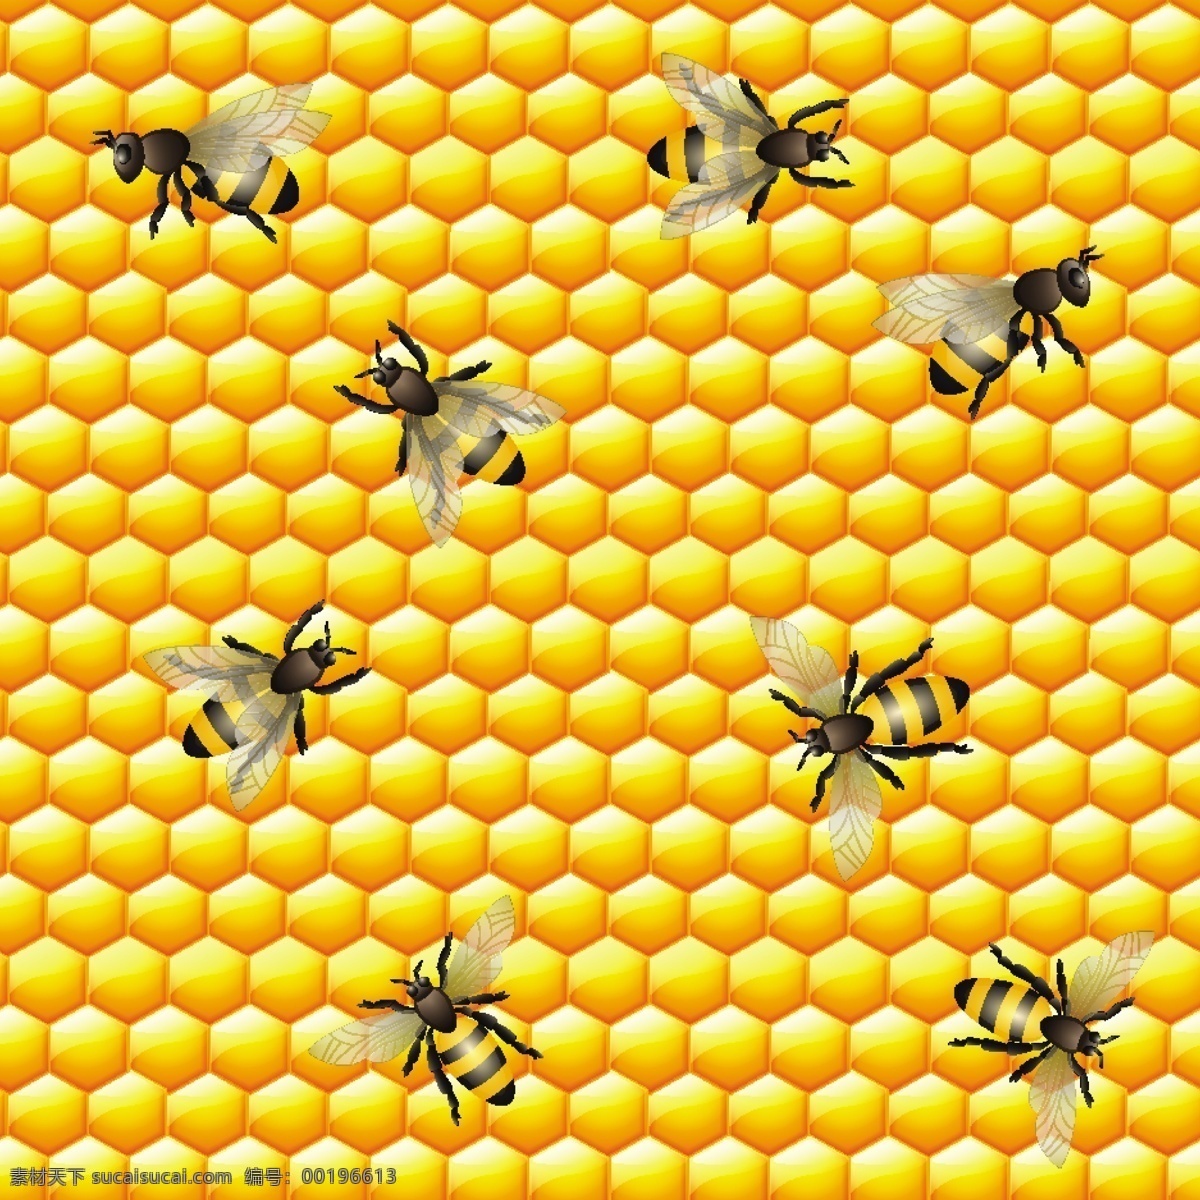 小蜜蜂插画 蜜蜂图标 蜂蜜图标 自然标签 山脉标签 动物标签 创意标签 标签 图标 复古标签 卡片 吊牌 蜂蜜搅拌棒 蜂巢 蜂蜜罐 蜂蜜 蜜蜂 蜂窝 蜂箱 蜜蜂logl 蜂蜜logo 背景